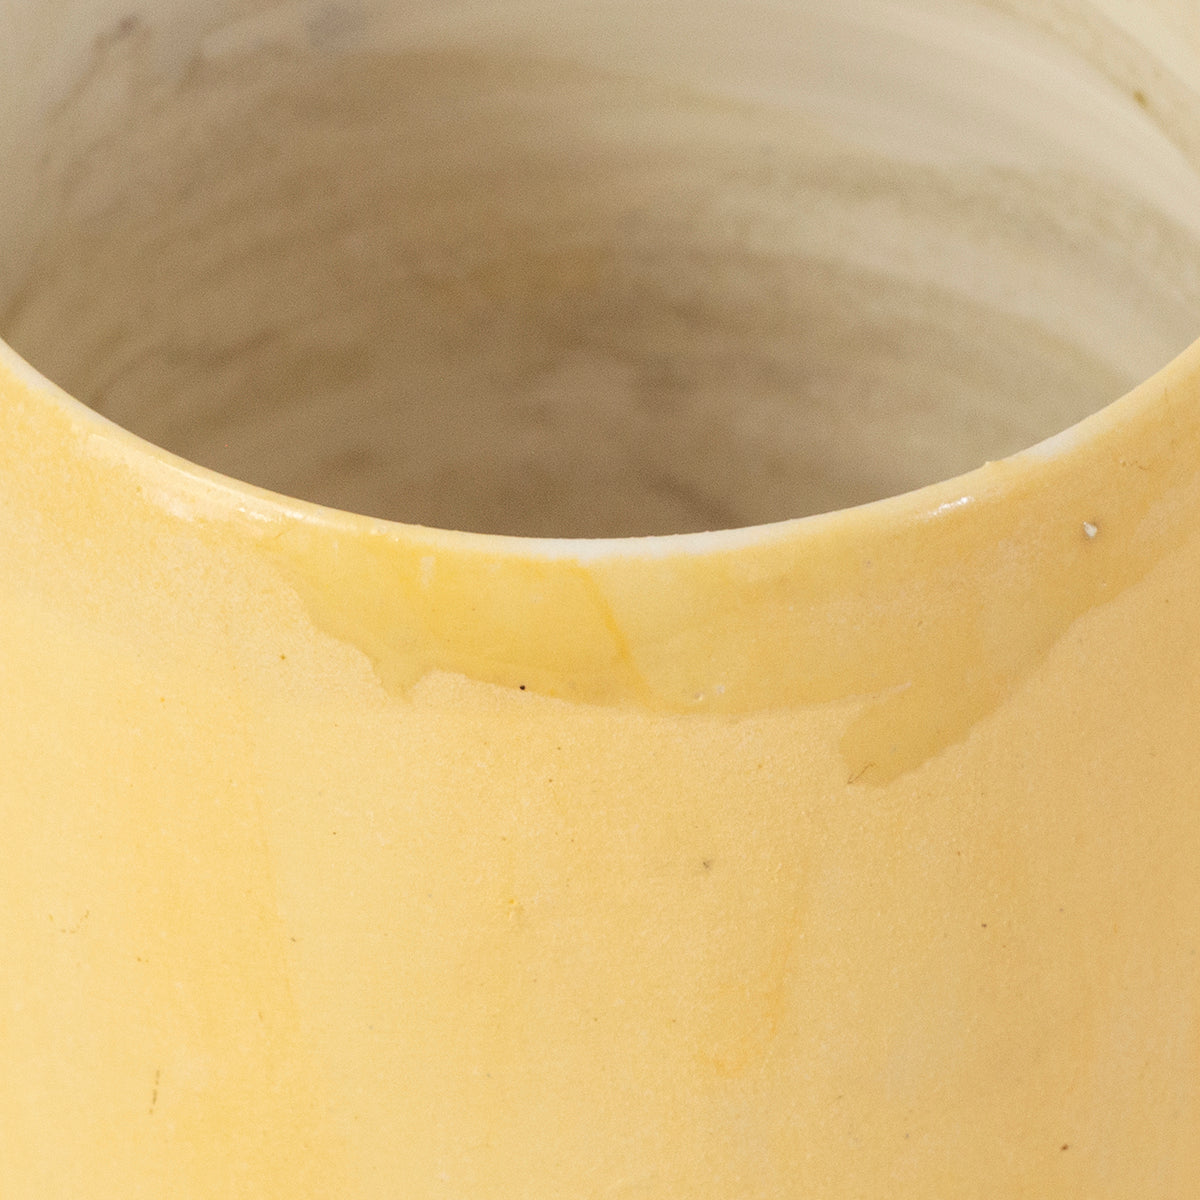 Ceramic handmade mug yellow